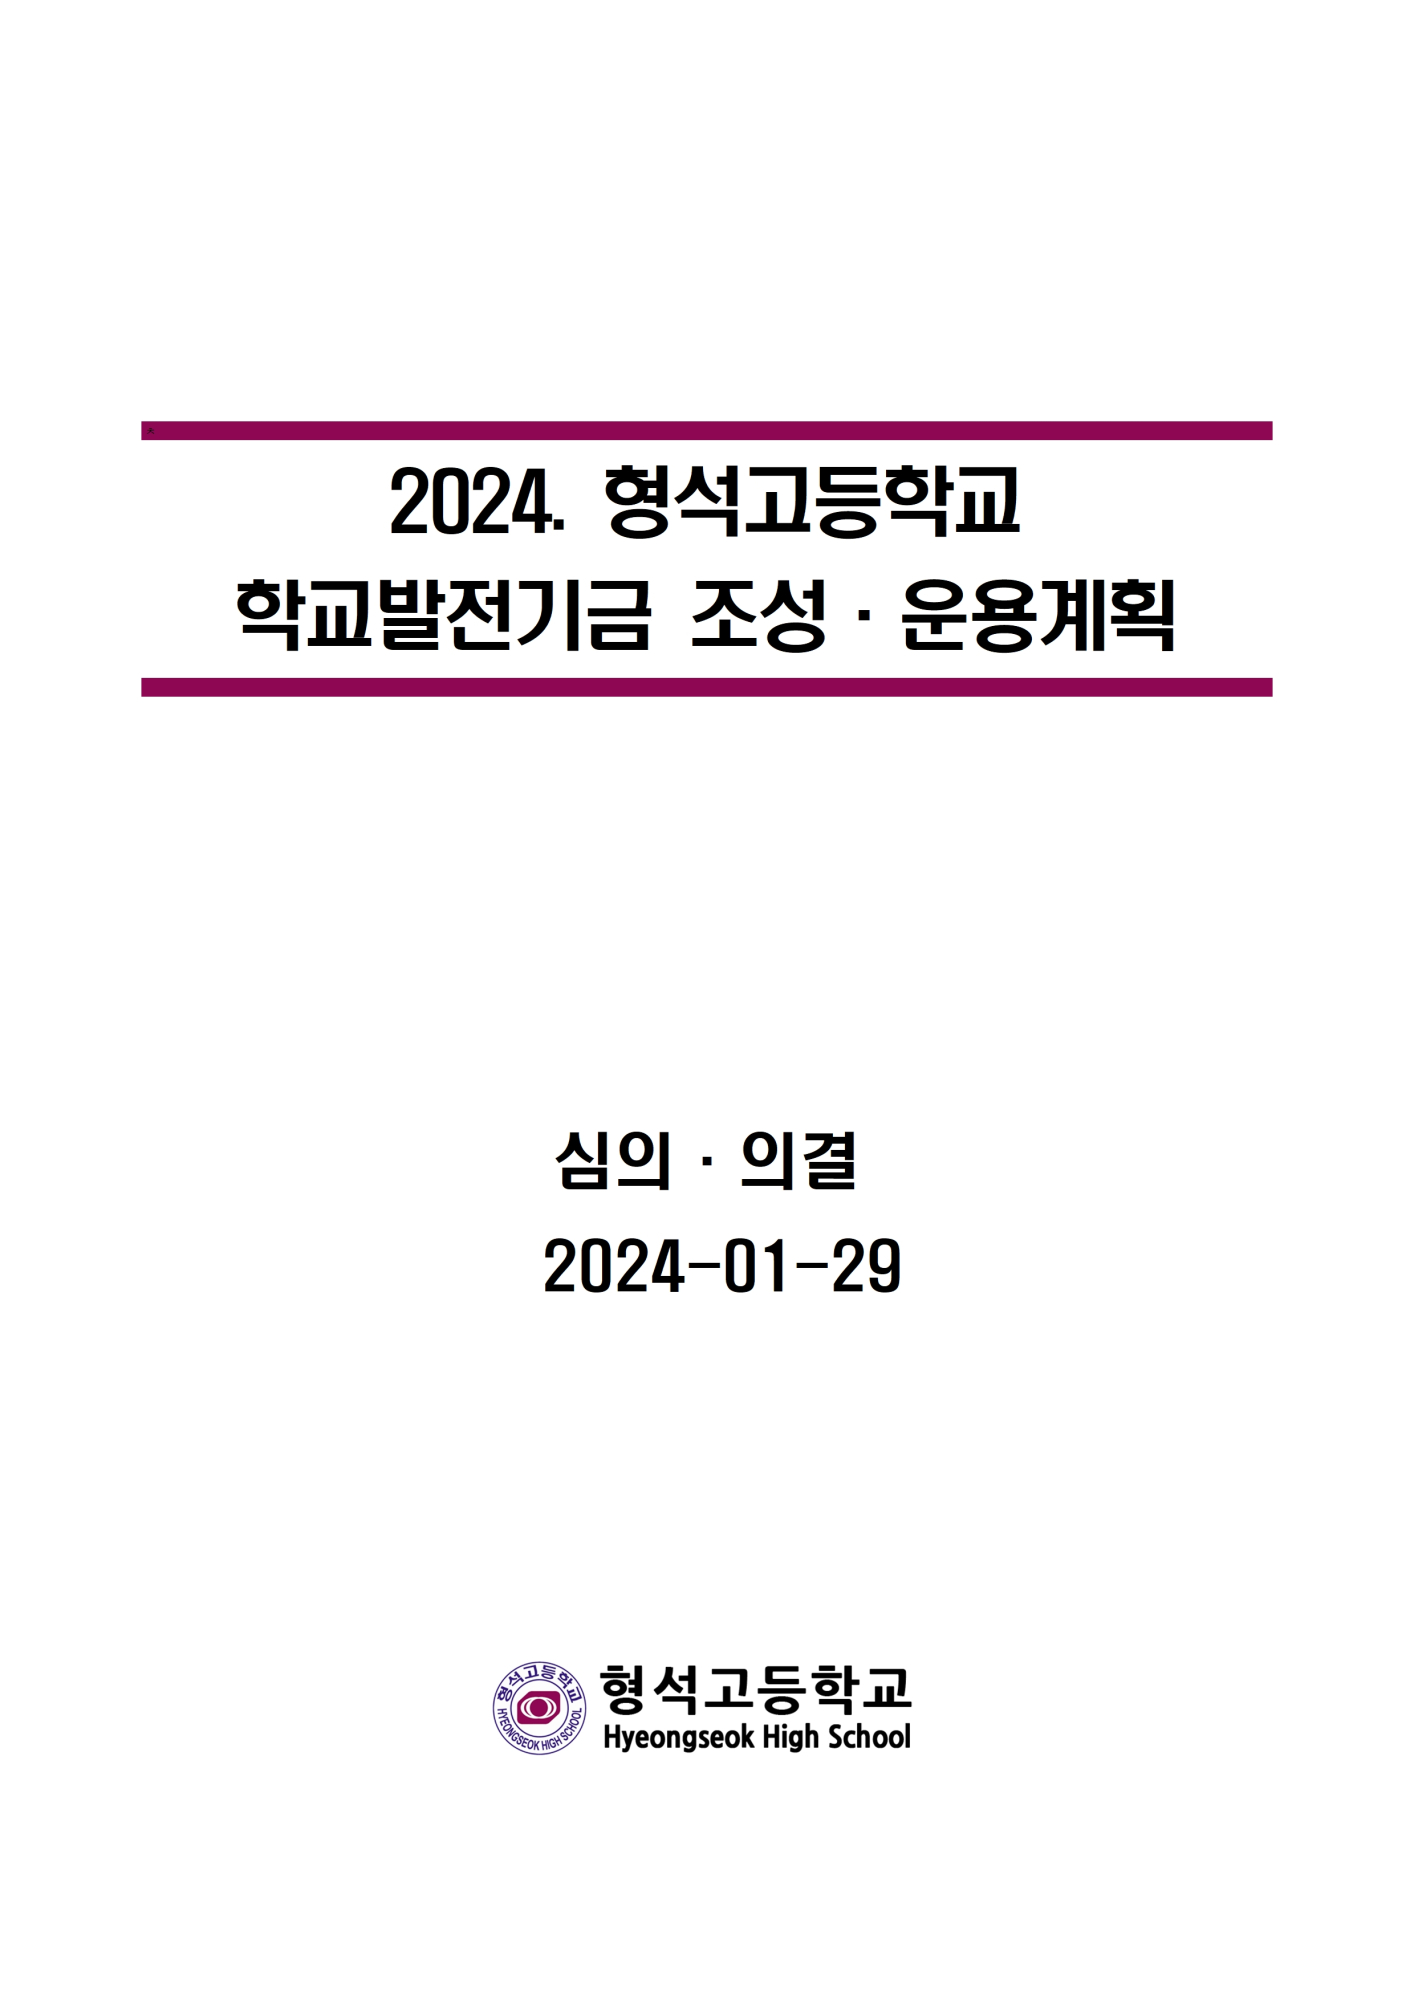 [형석고] 2024. 학교발전기금운용계획001